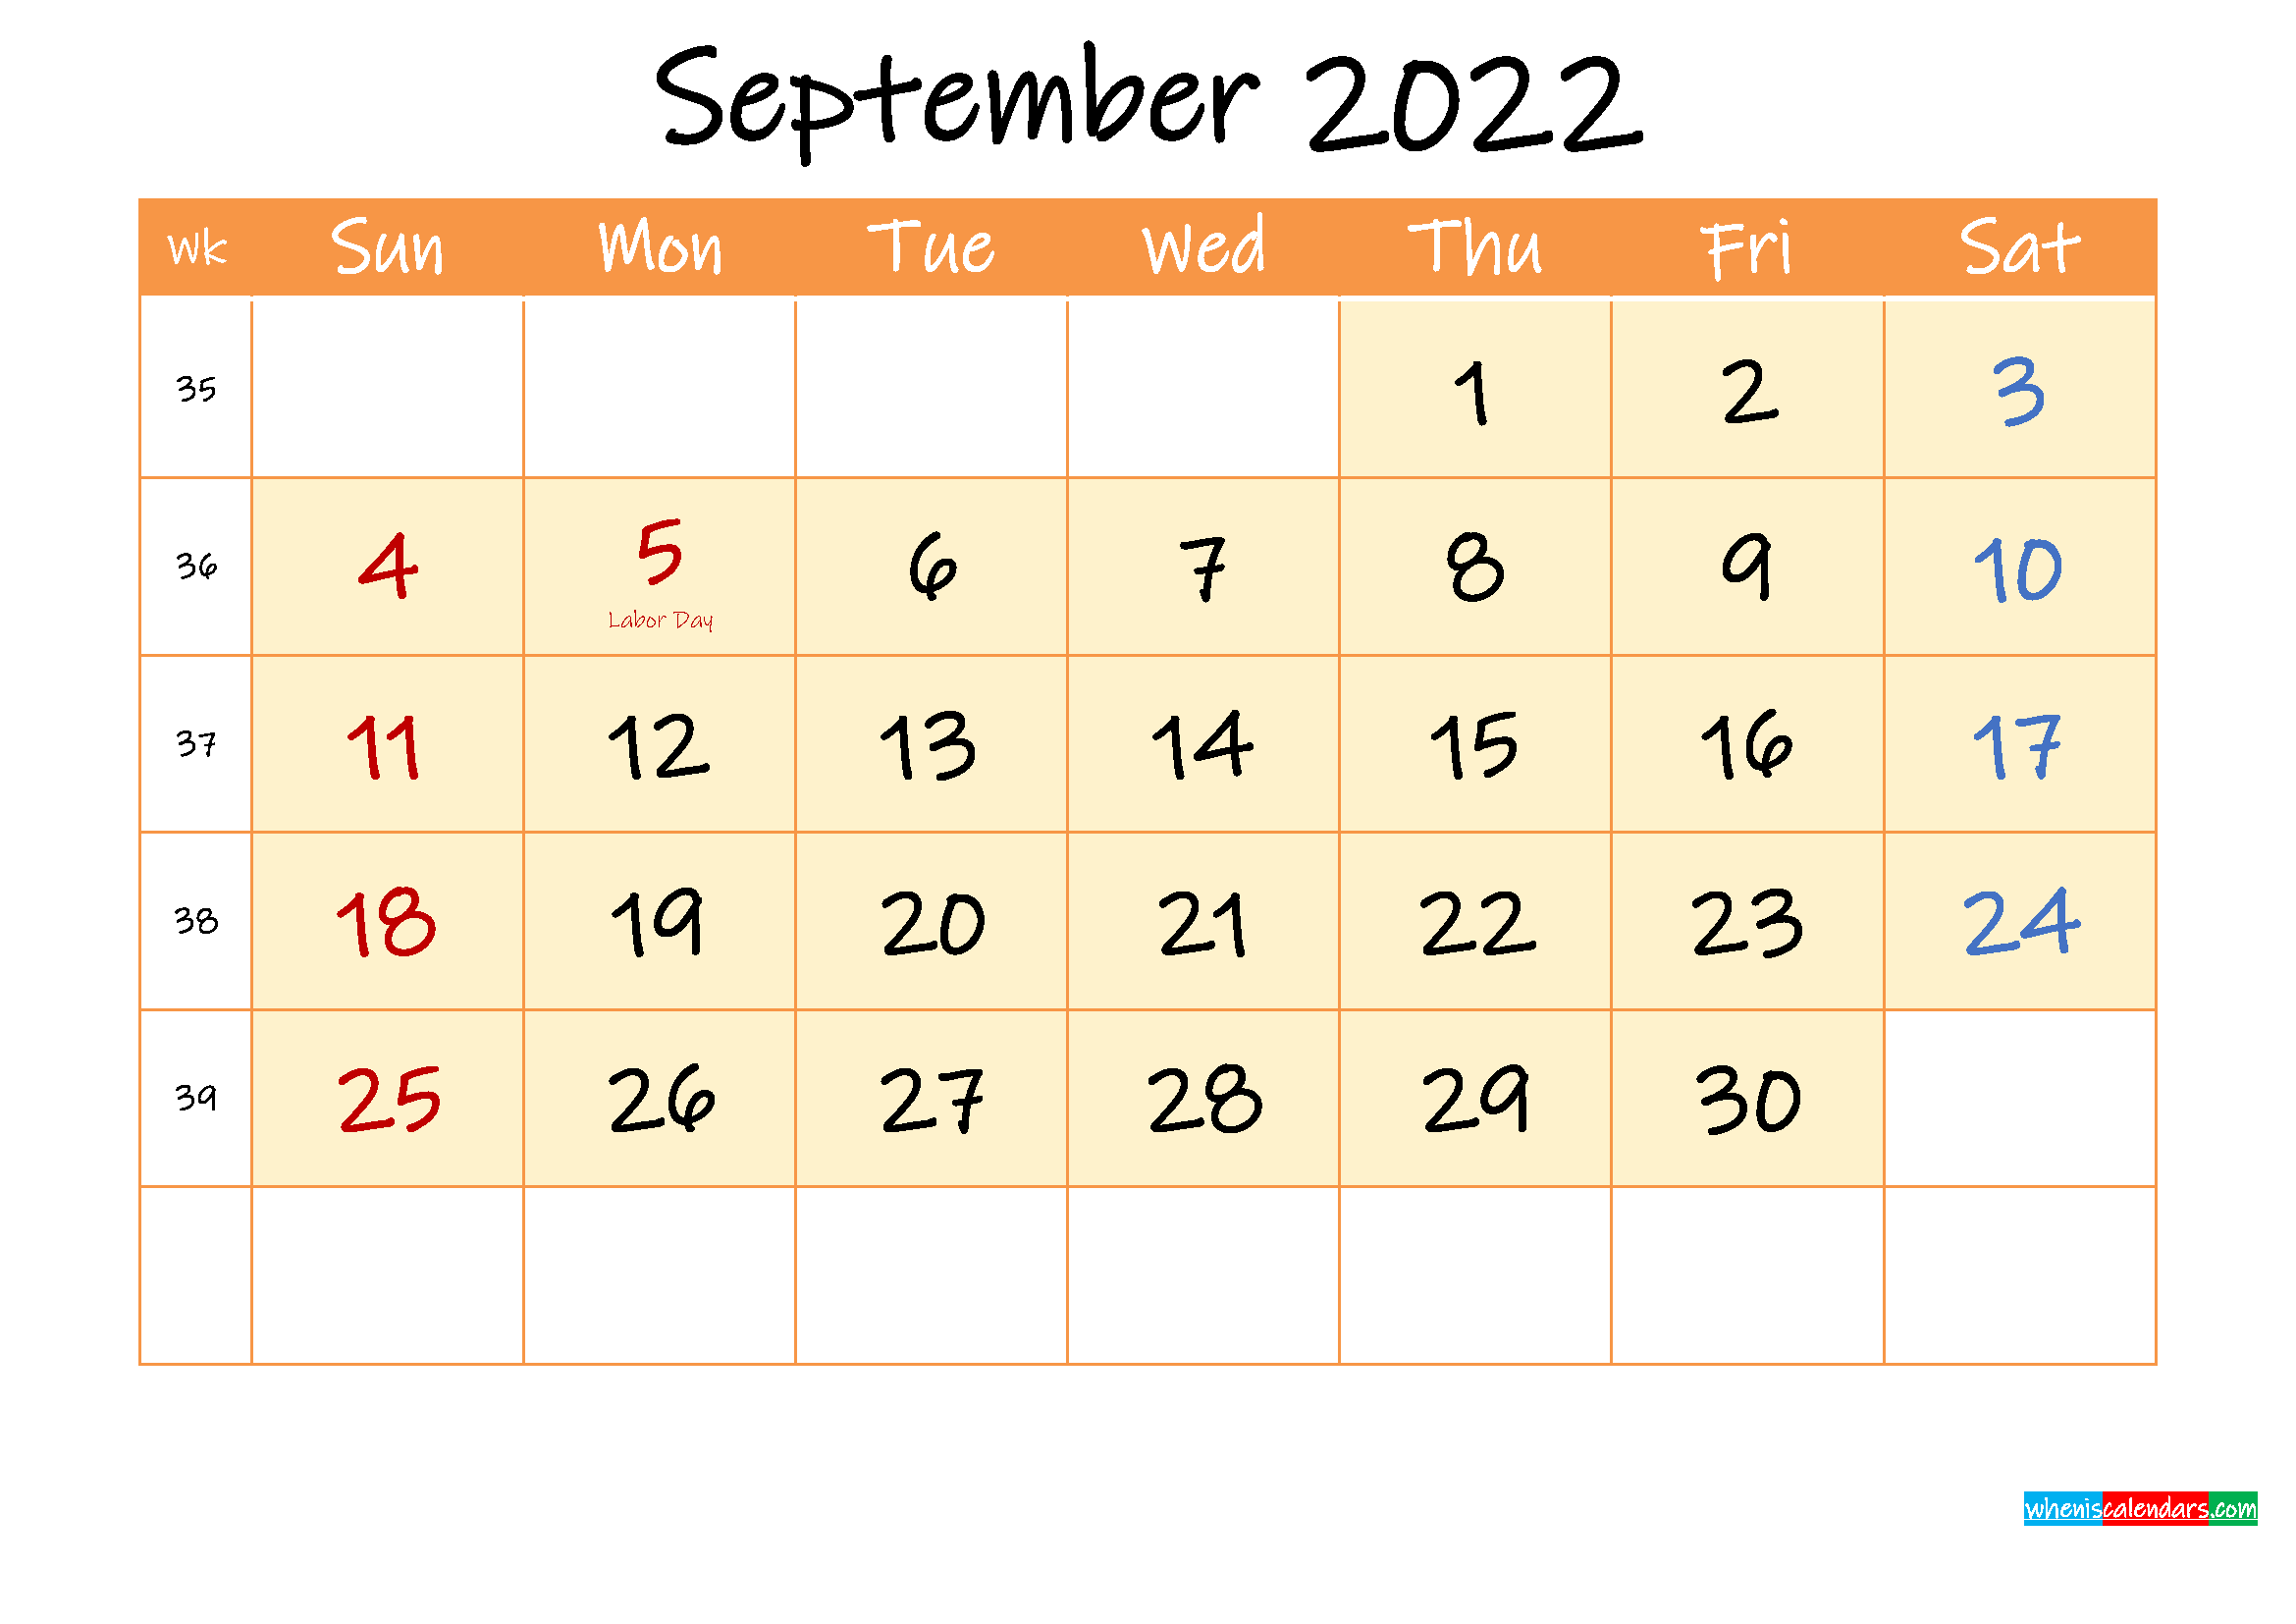 fsu-uconn-spring-calendar-aug-sept-2022-calendar-print-november